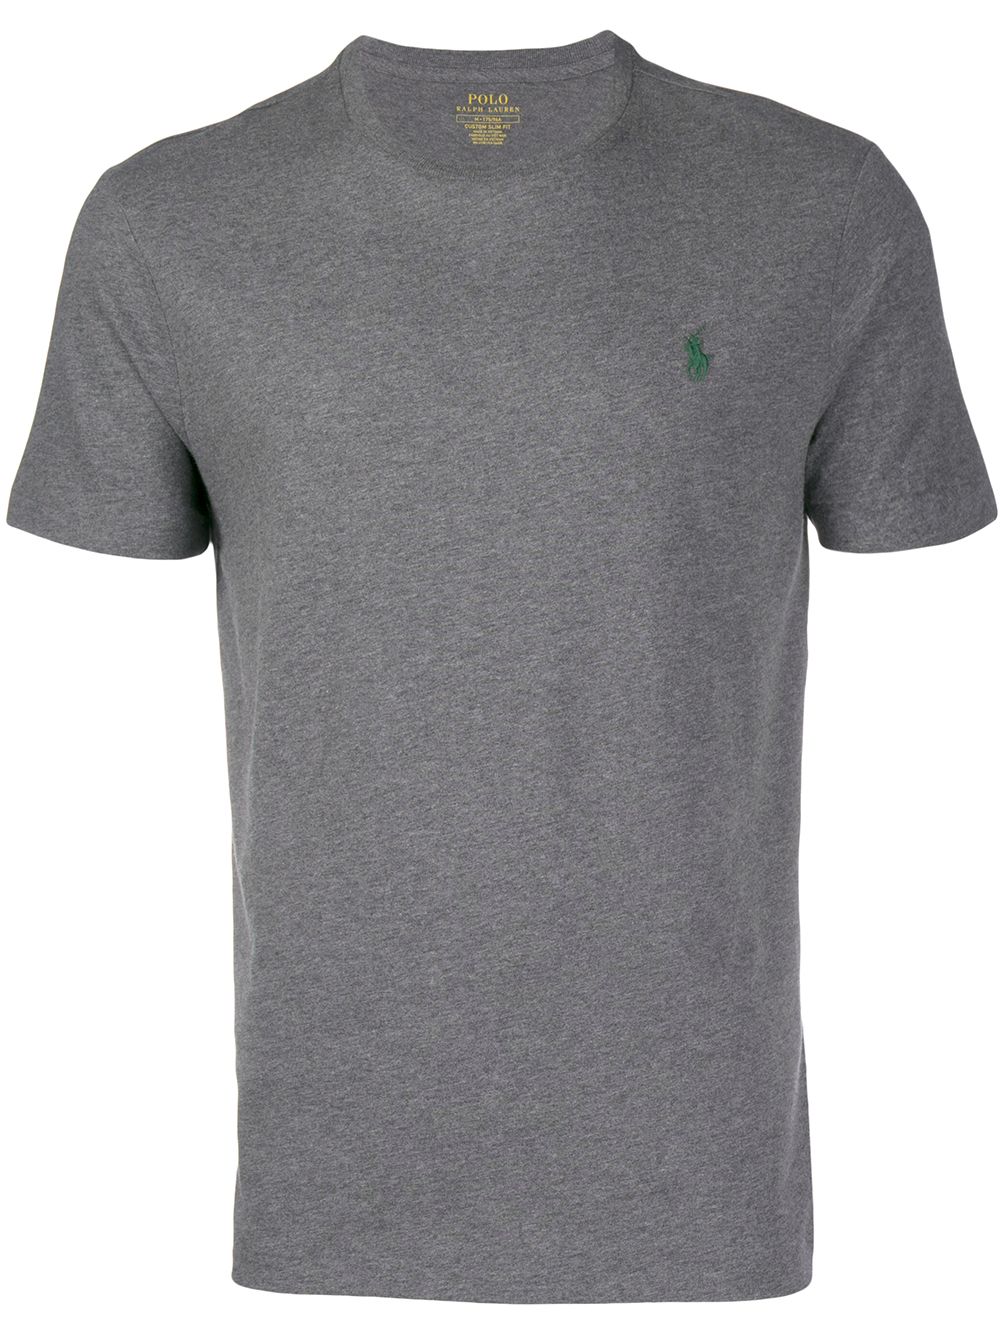 фото Polo ralph lauren футболка с короткими рукавами и логотипом